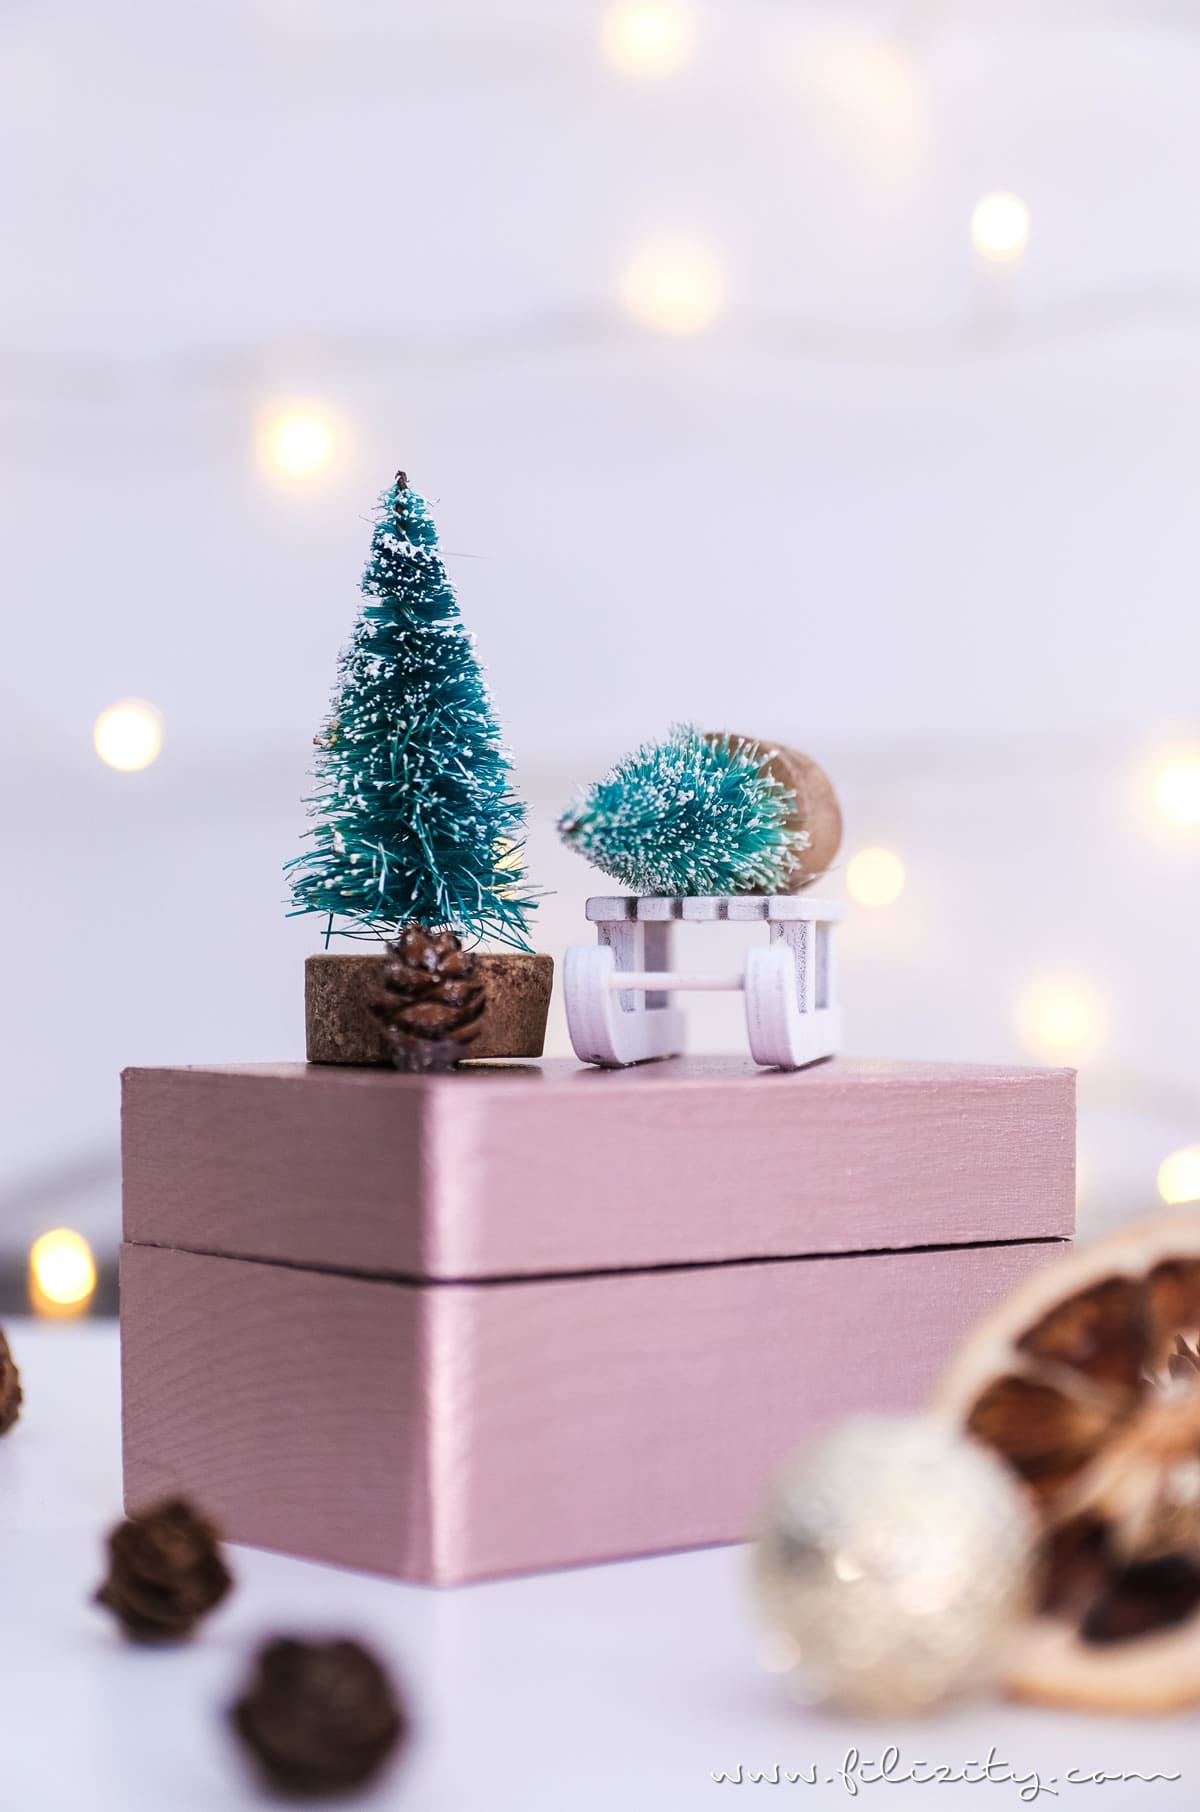 Weihnachtsgeschenke verpacken: DIY Geschenkboxen "Winterwald" aus alten Holzschachteln | Geschenkverpackung und Deko-Idee mit Tannenbaum, Schlitten & Co. | Filizity.com | DIY-Blog aus dem Rheinland #weihnachten #geschenkidee #weihnachtsgeschenke #ohtannenbaum